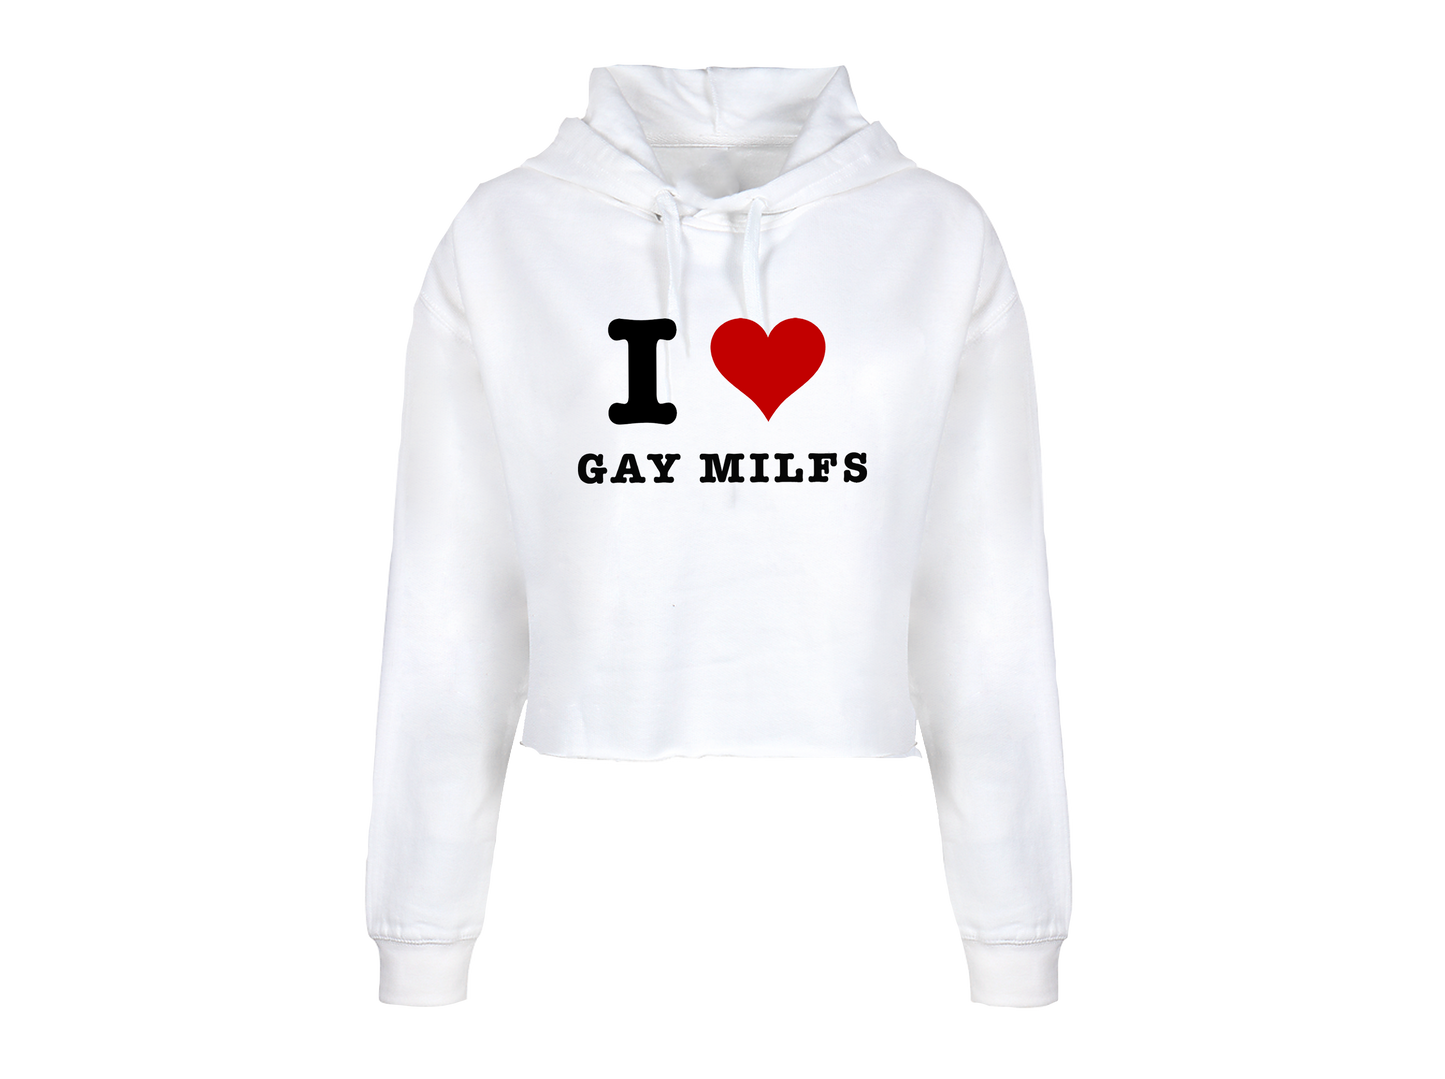 "Gay Milfs" Cropped Hoodie